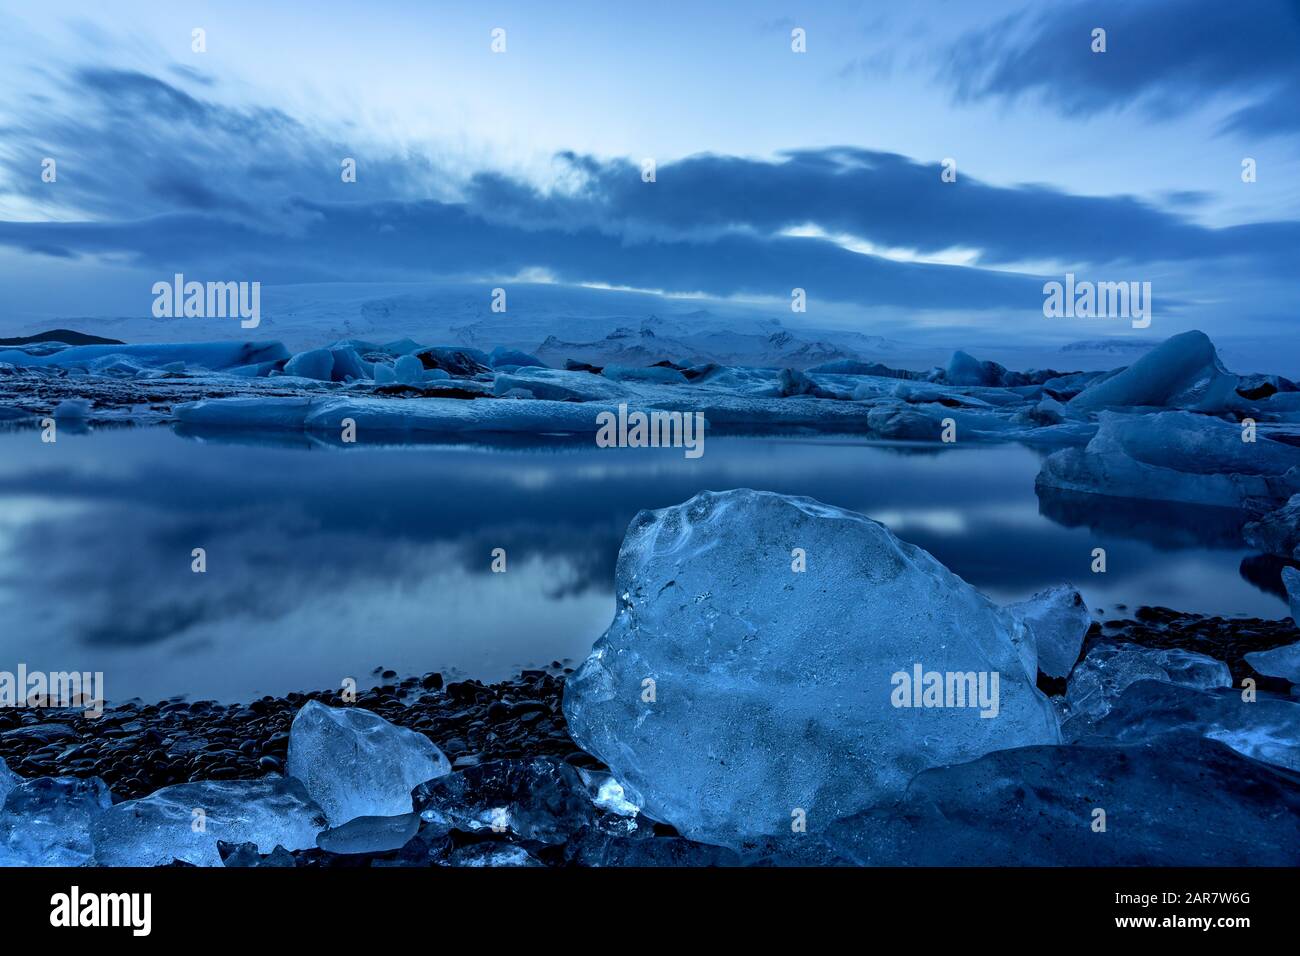 Island-Gletscher jokulsarlon am Abend Eisberge, die auf dem kalten, friedlichen Wasser nach Sonnenuntergang mit dramatischem Himmel schweben. Stockfoto